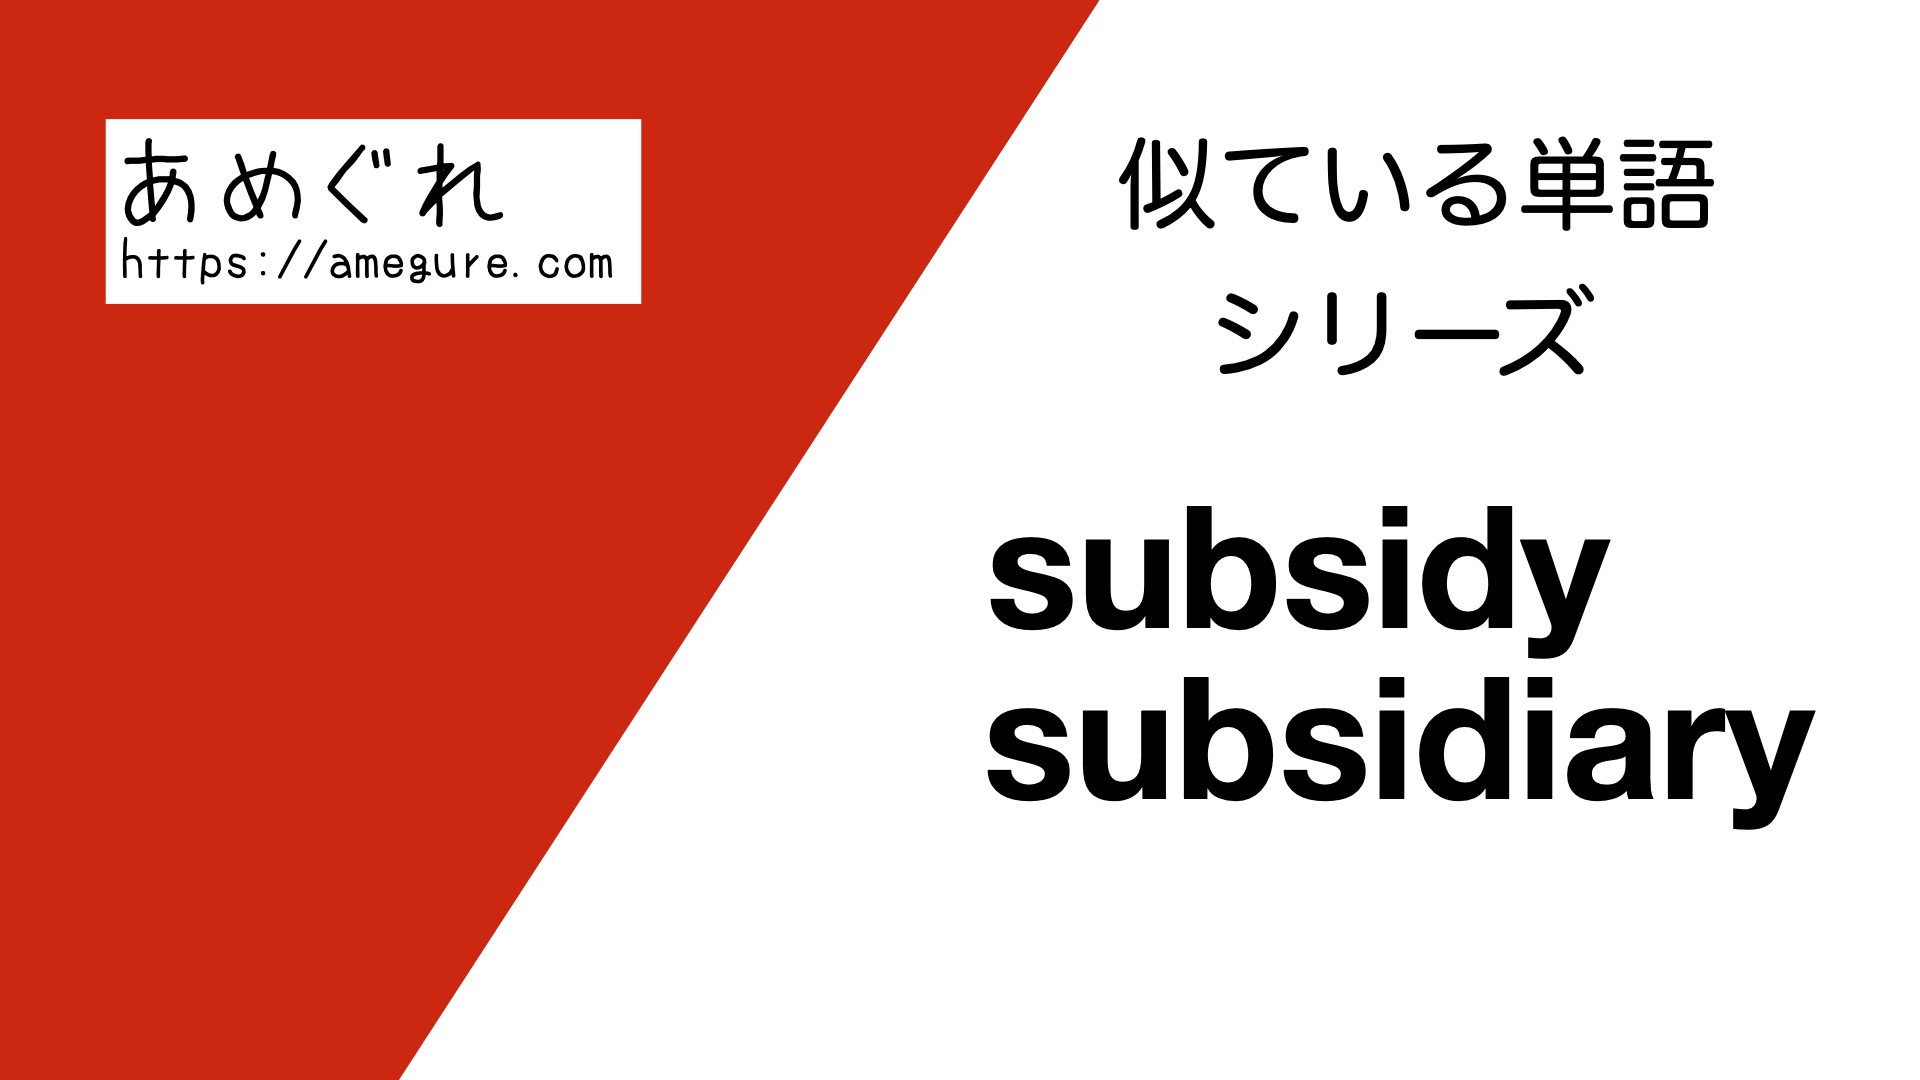 subsidy-subsidiary違い